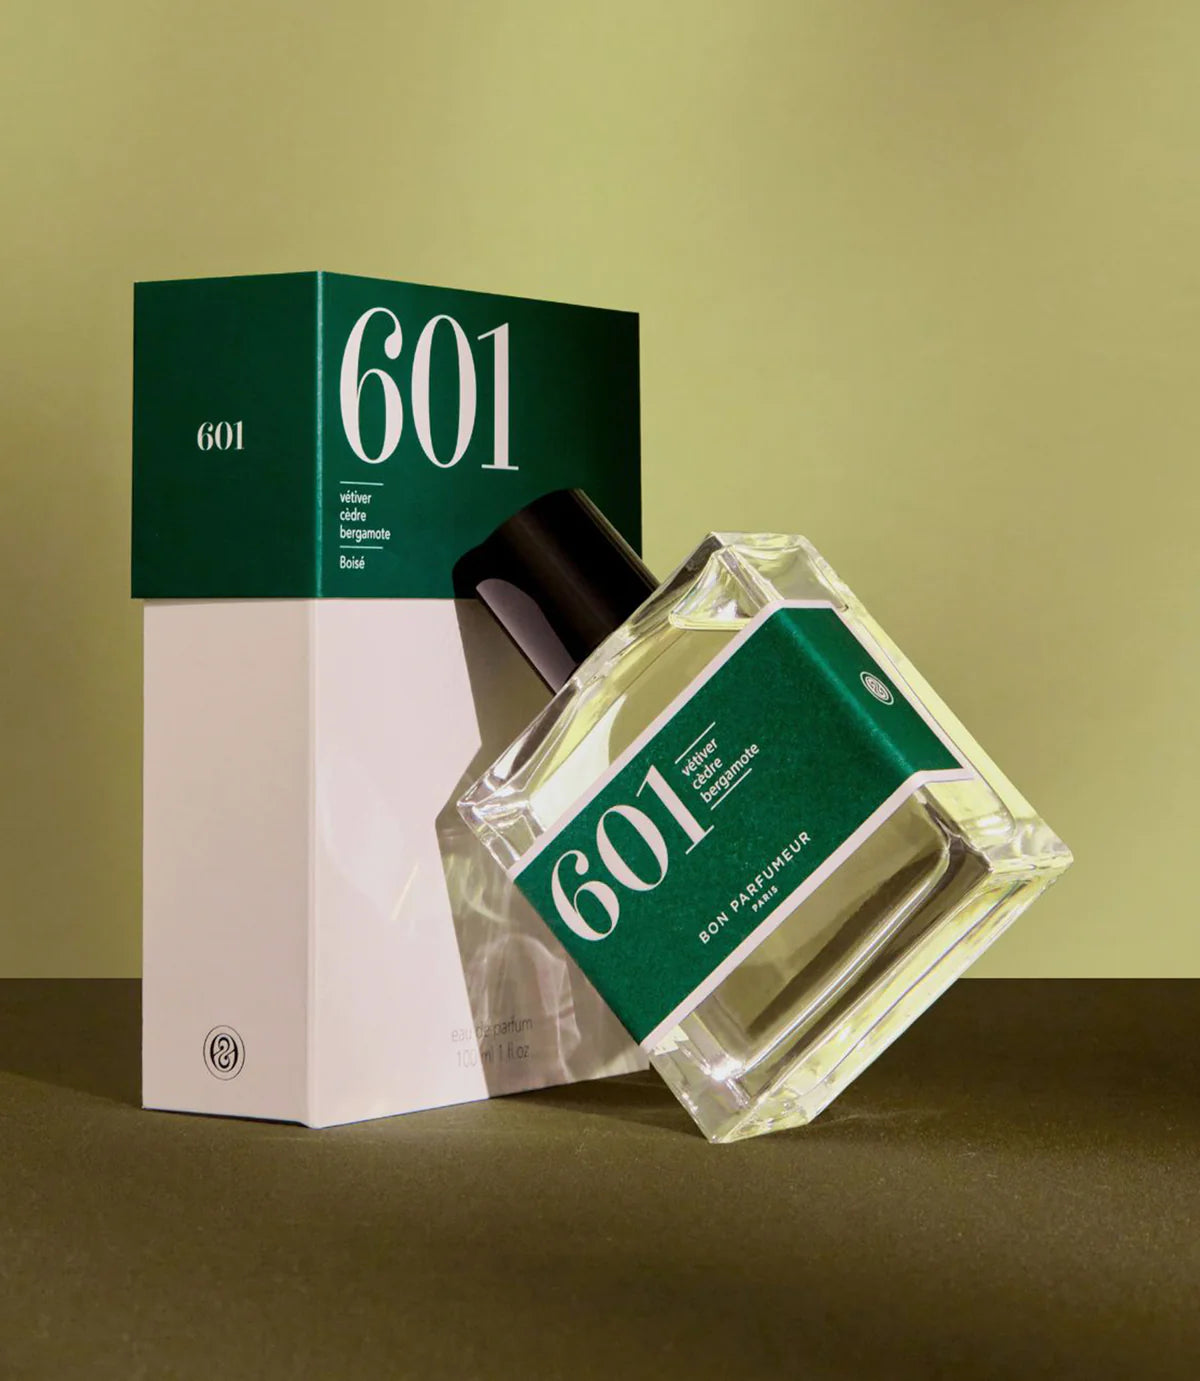 Bon Parfumeur, 601, Woody, Vetiver, Cedar, Bergamot